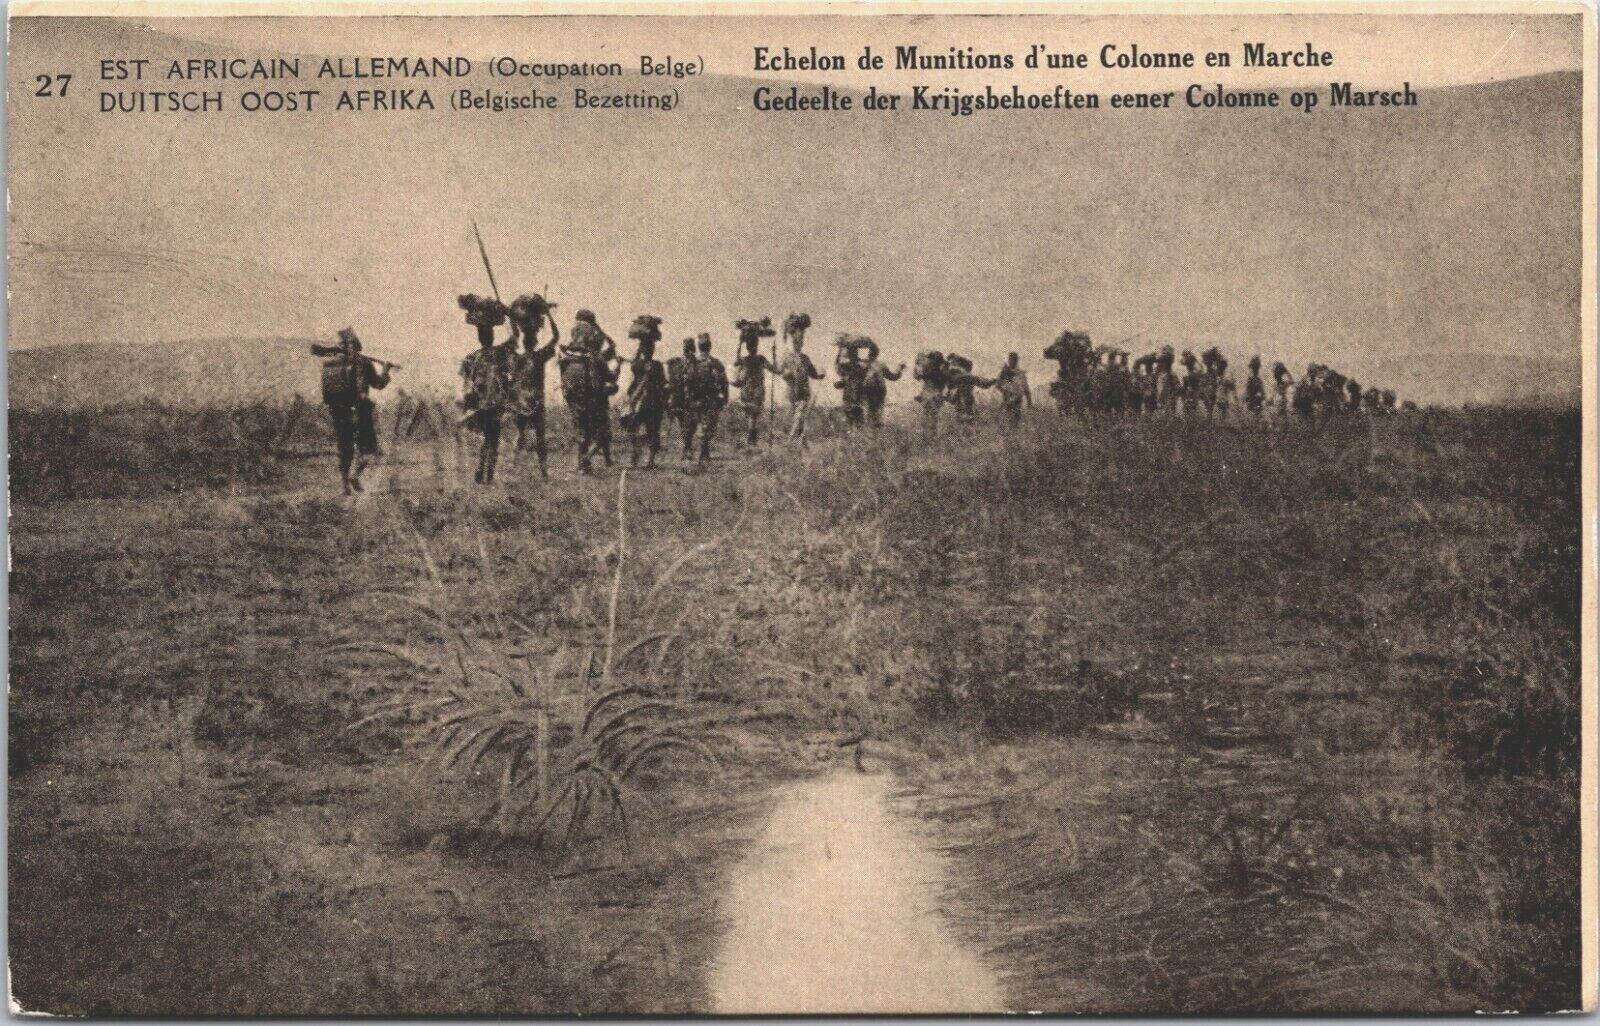 Est Africain Belge Echelon Munitions Colonne en Marche Vintage Postcard B114